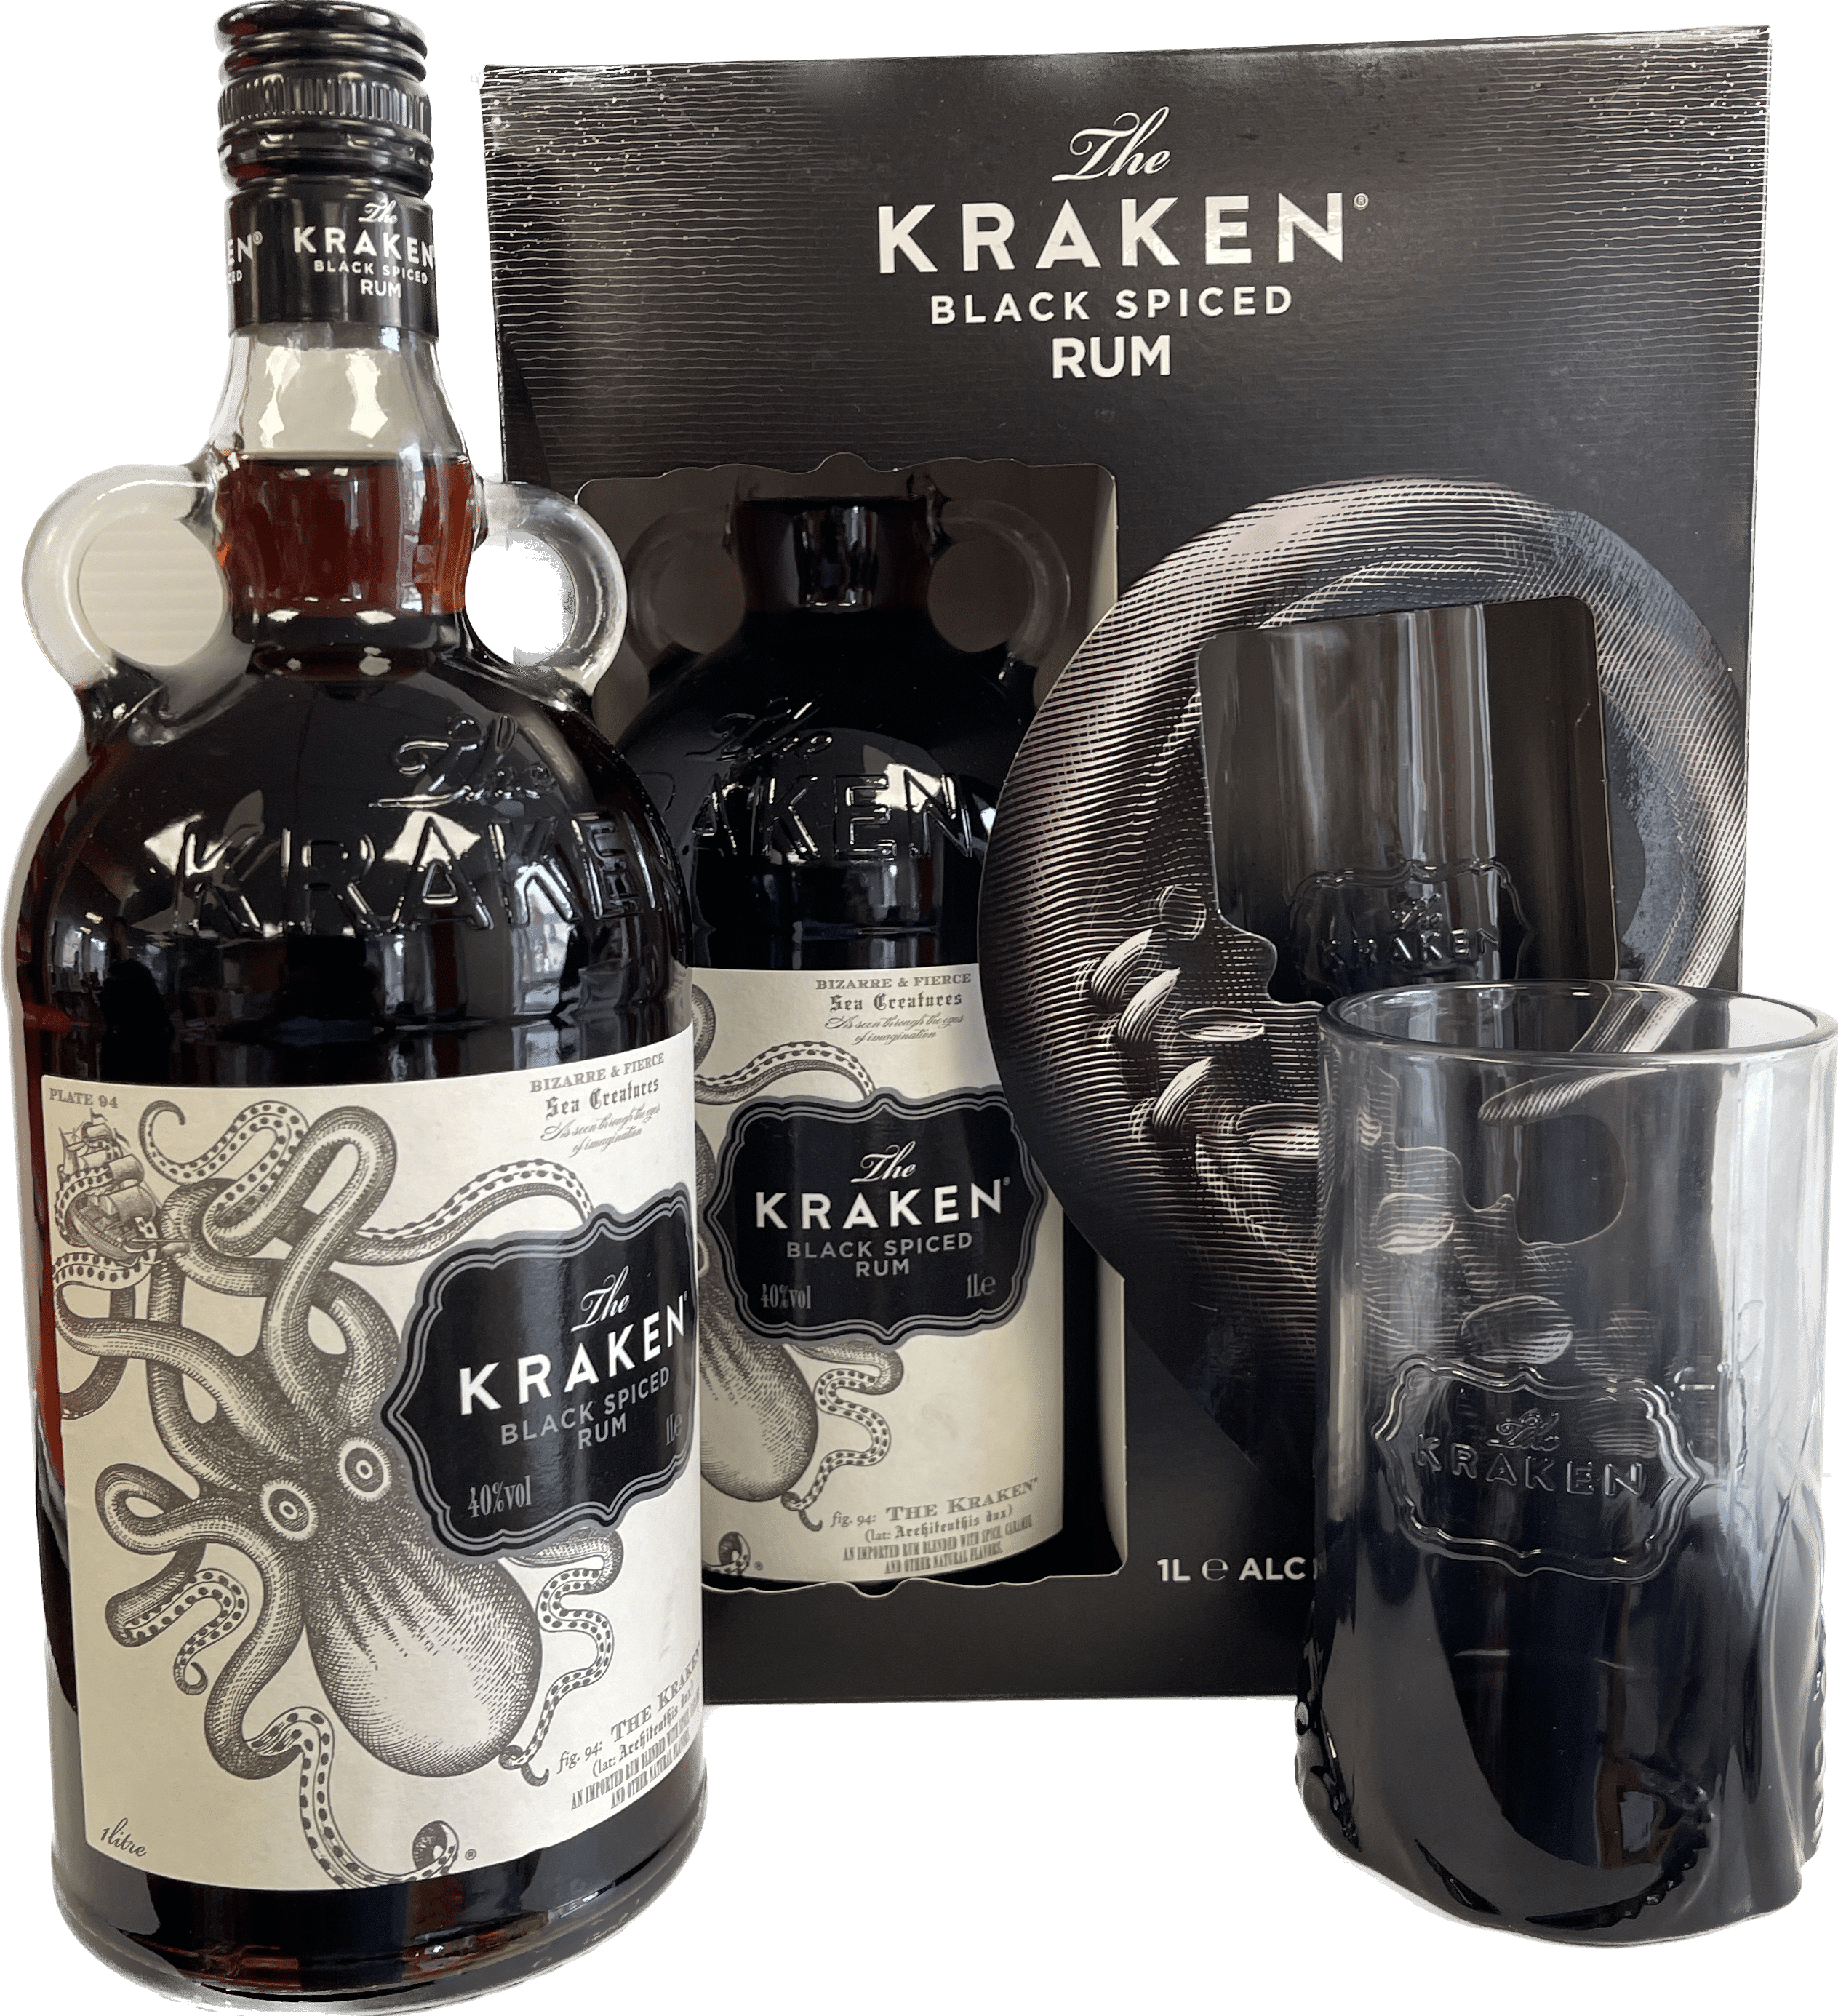 The Kraken Black Spiced Rum 70cl - Kraken Company